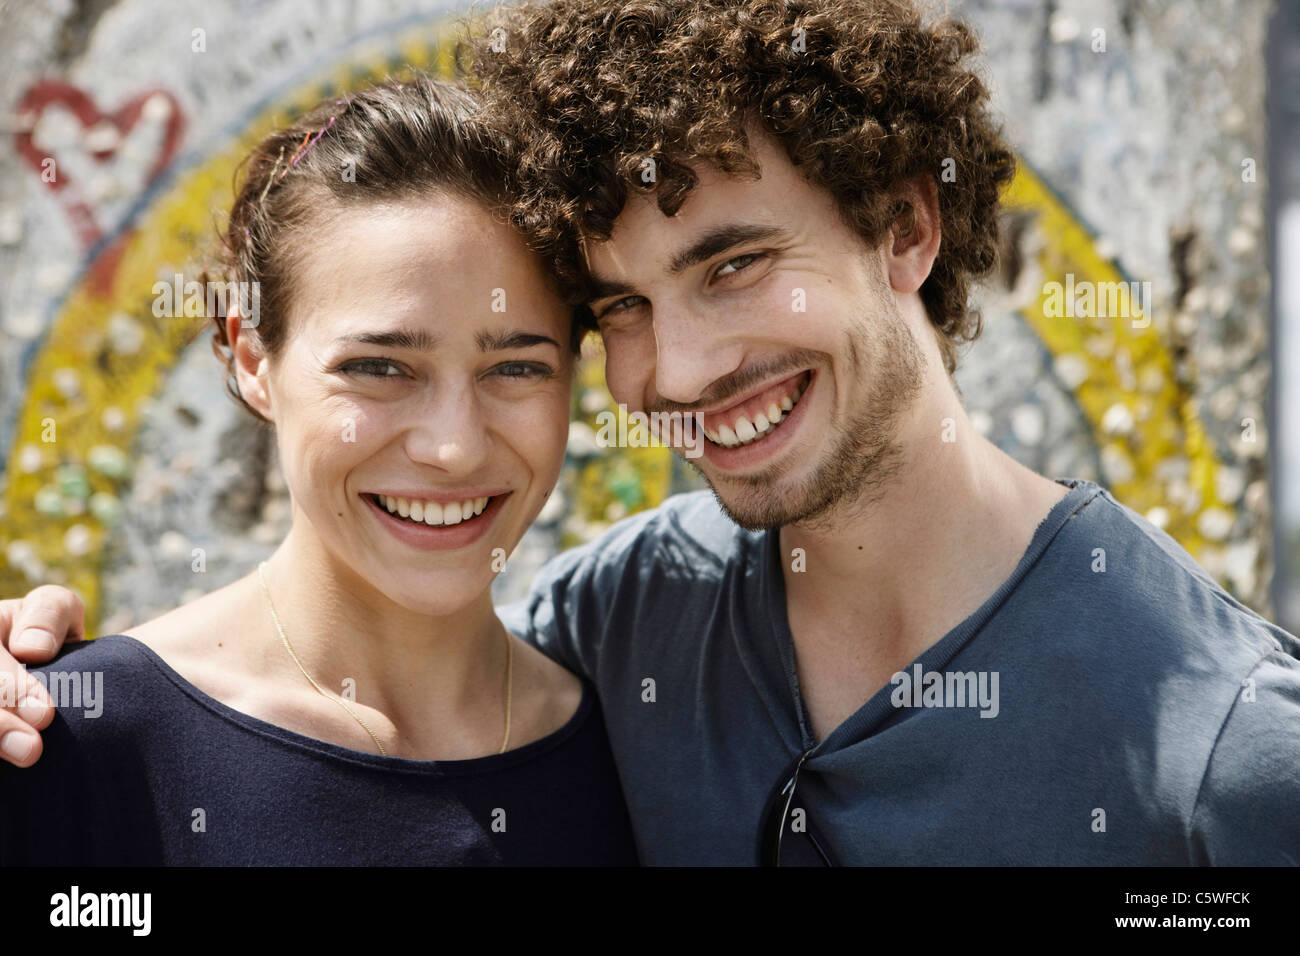 Germania Berlino giovane coppia in piedi di fronte a muro con graffiti, ritratto, close-up Foto Stock